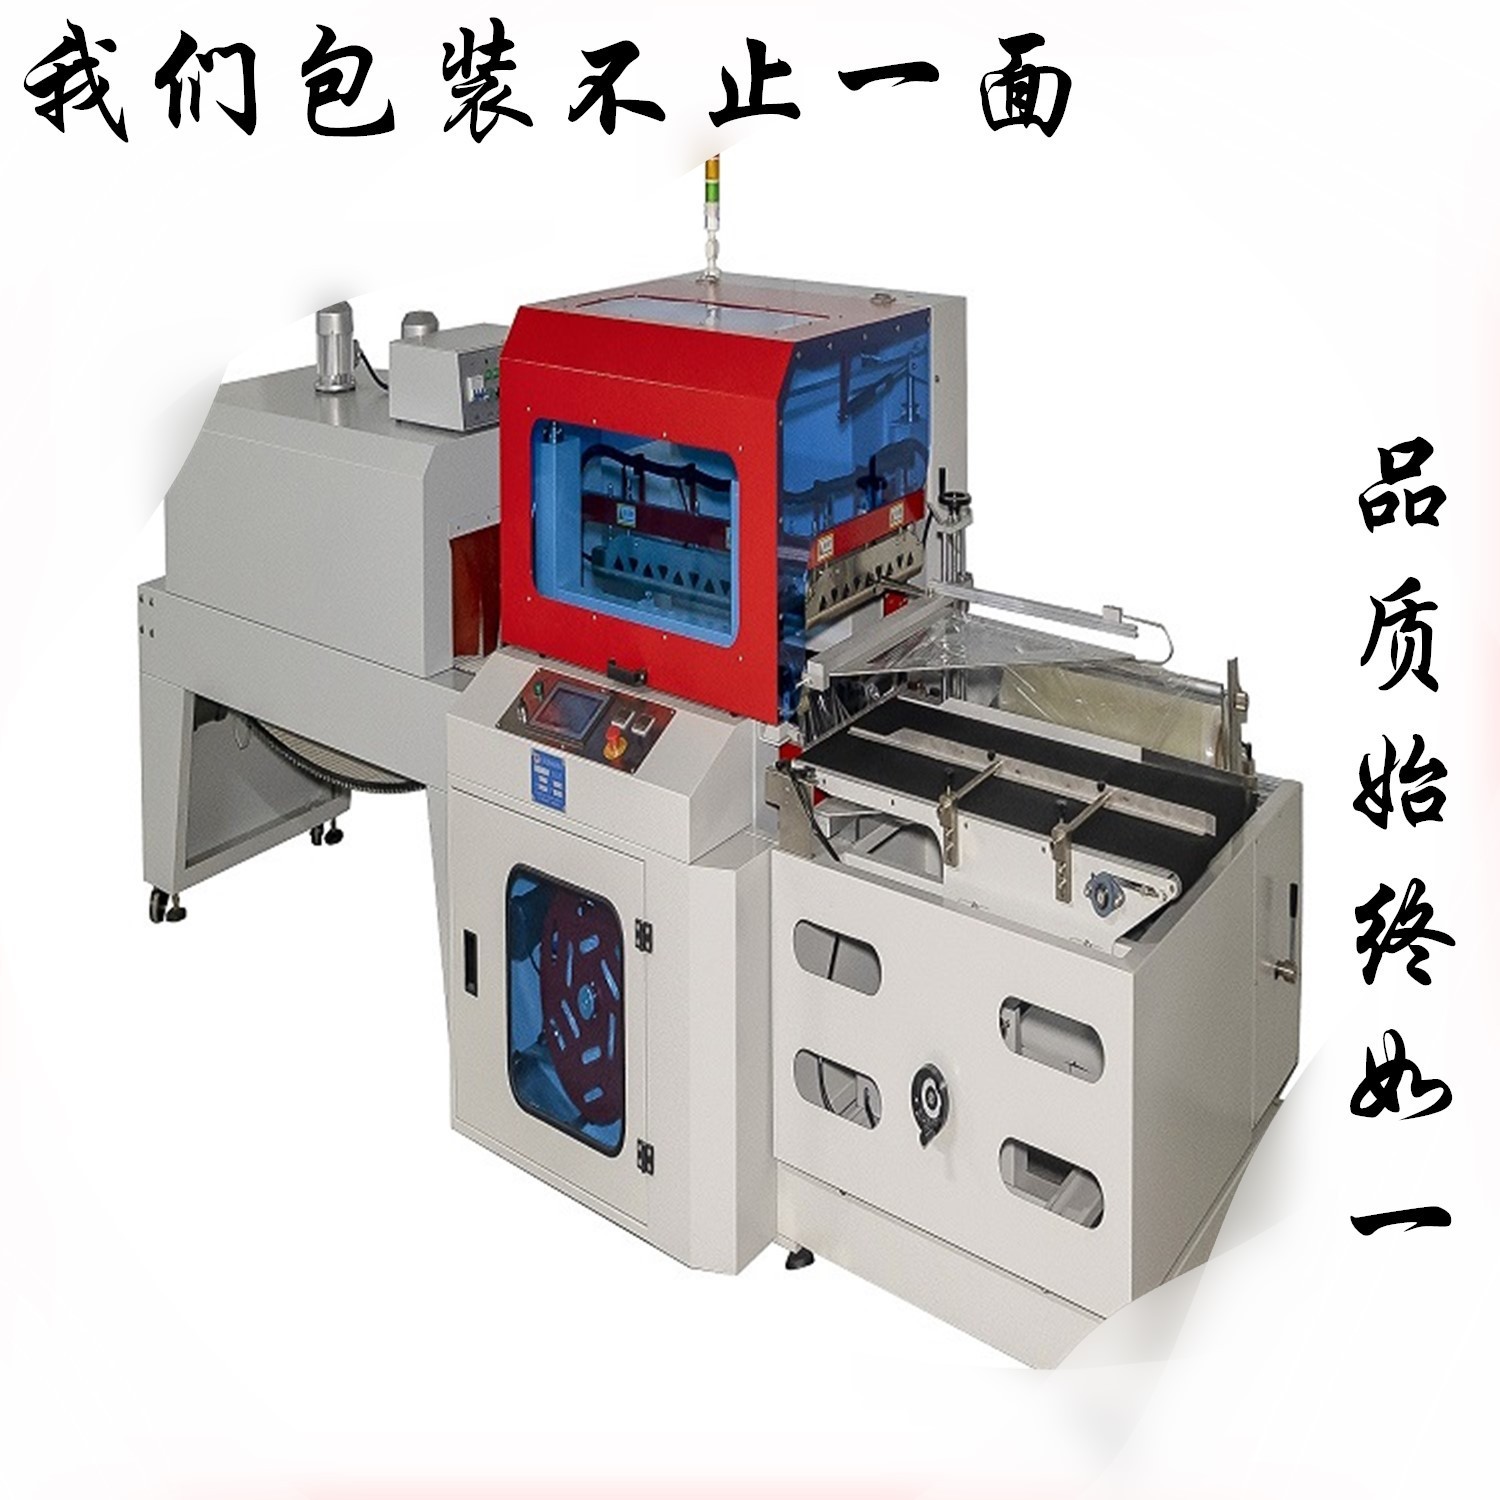 豆浆机塑封包膜热收缩机自动封切热收缩包装机自动包装热收缩膜机